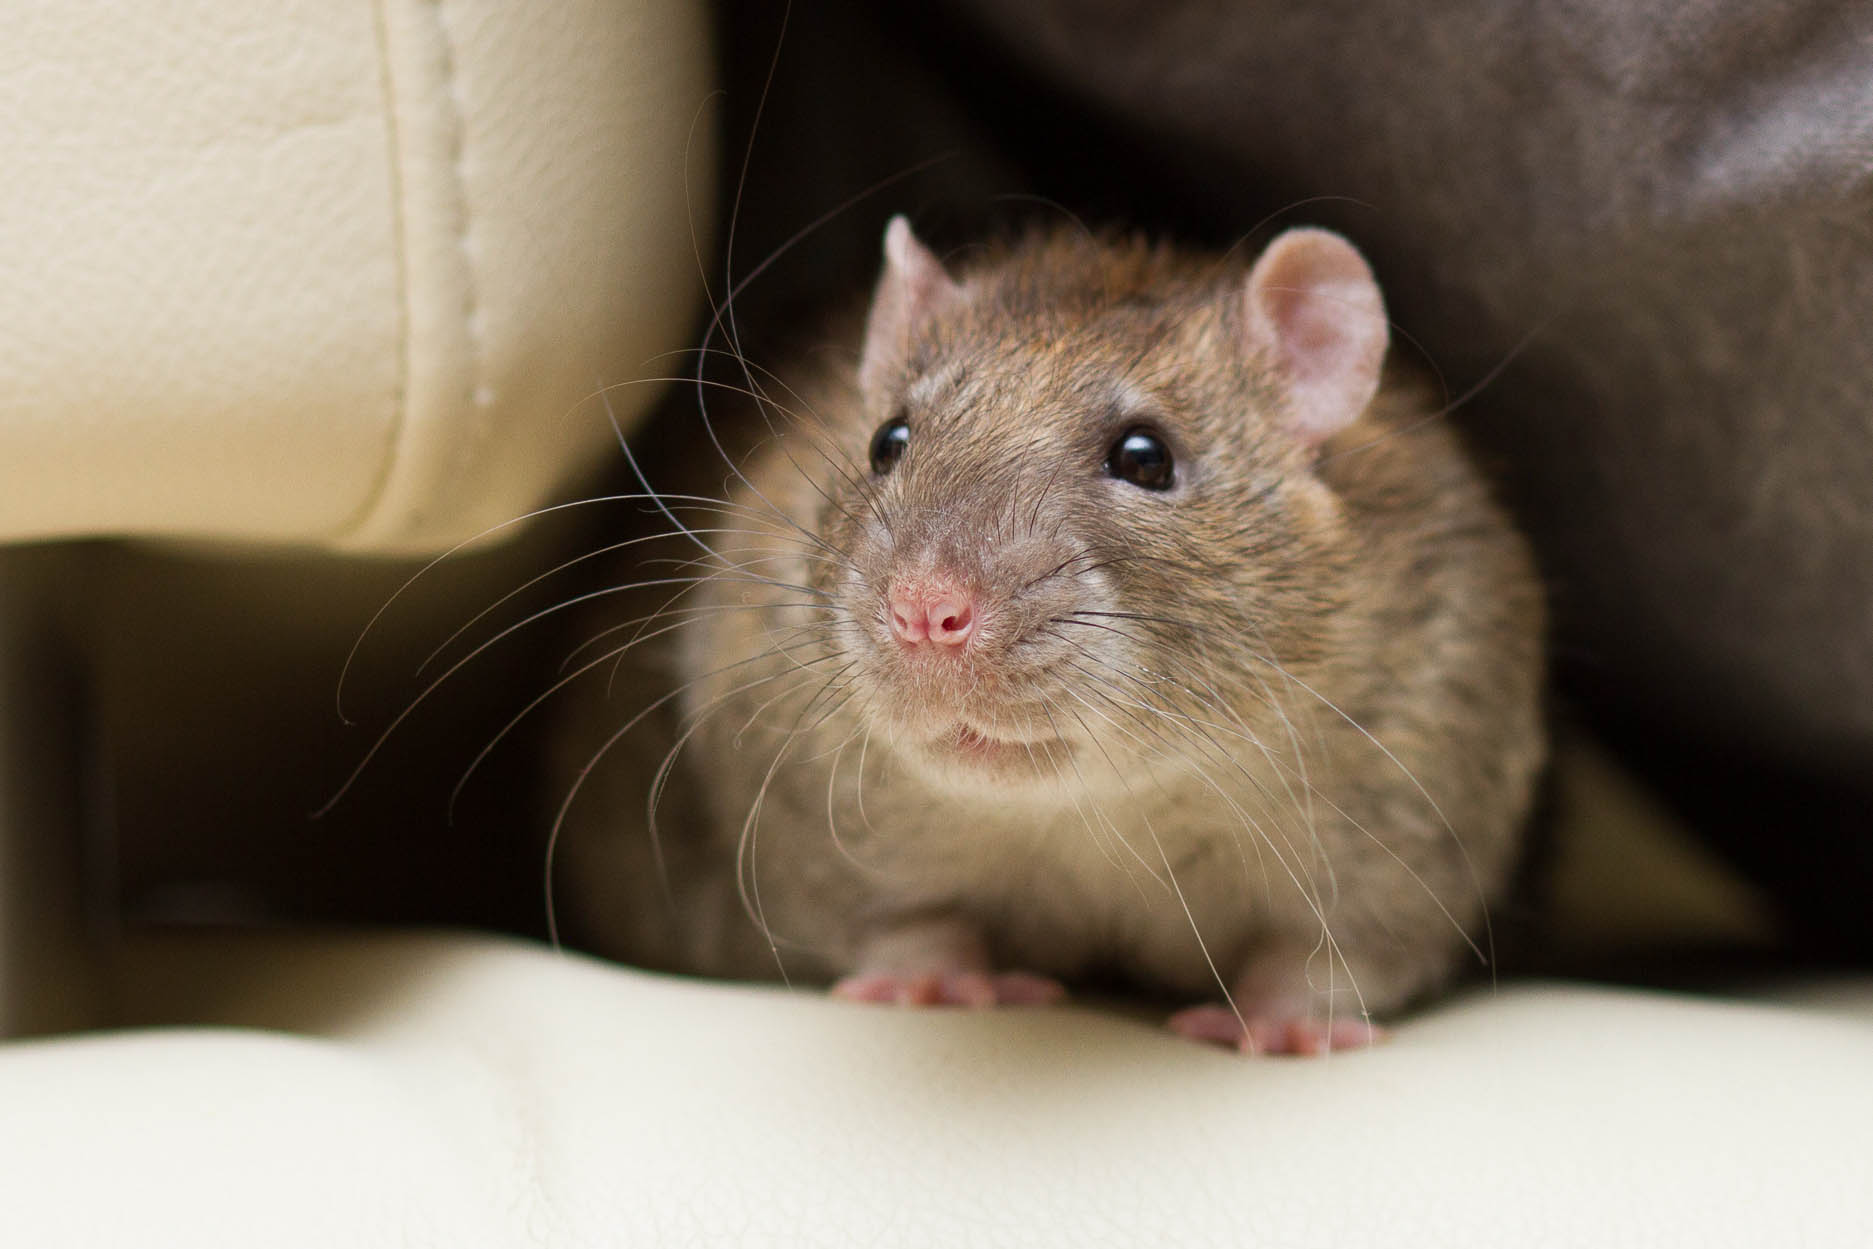 Kiwi: Diese Ratte biss oft zu – heute liebt sie es zu schmusen